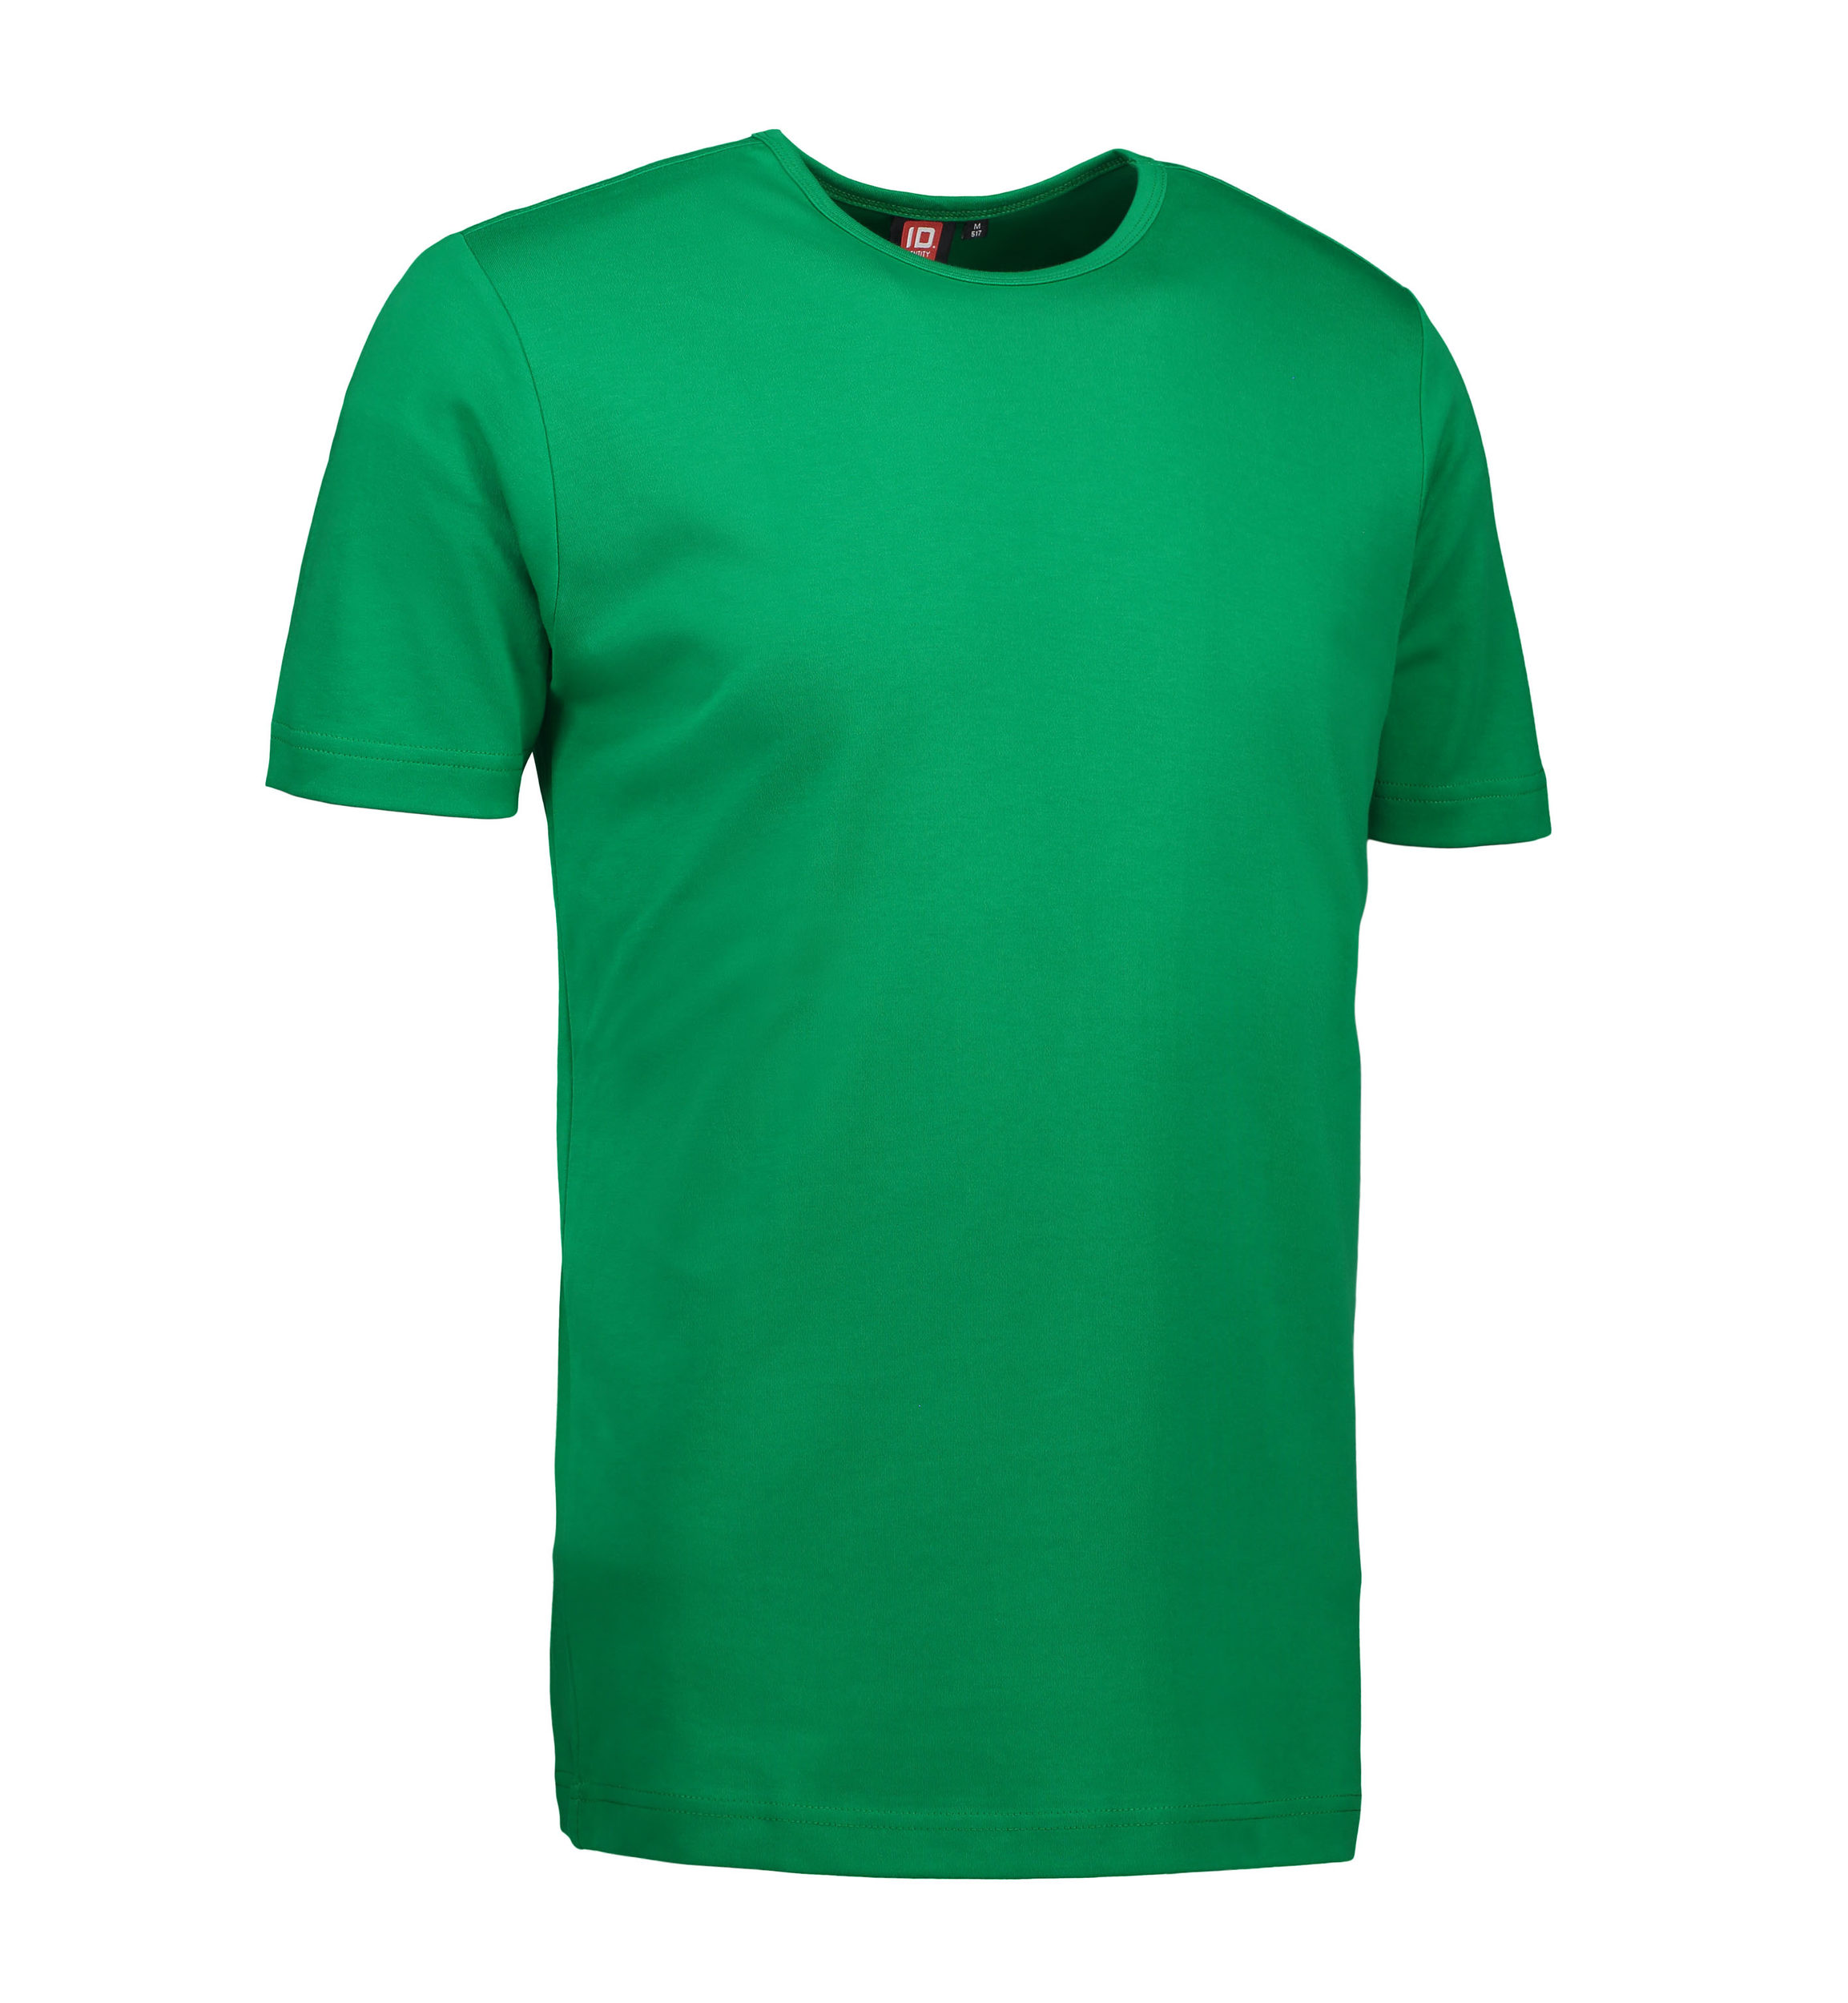 Billede af Grøn t-shirt med rund hals til mænd - 2XL hos Sygeplejebutikken.dk